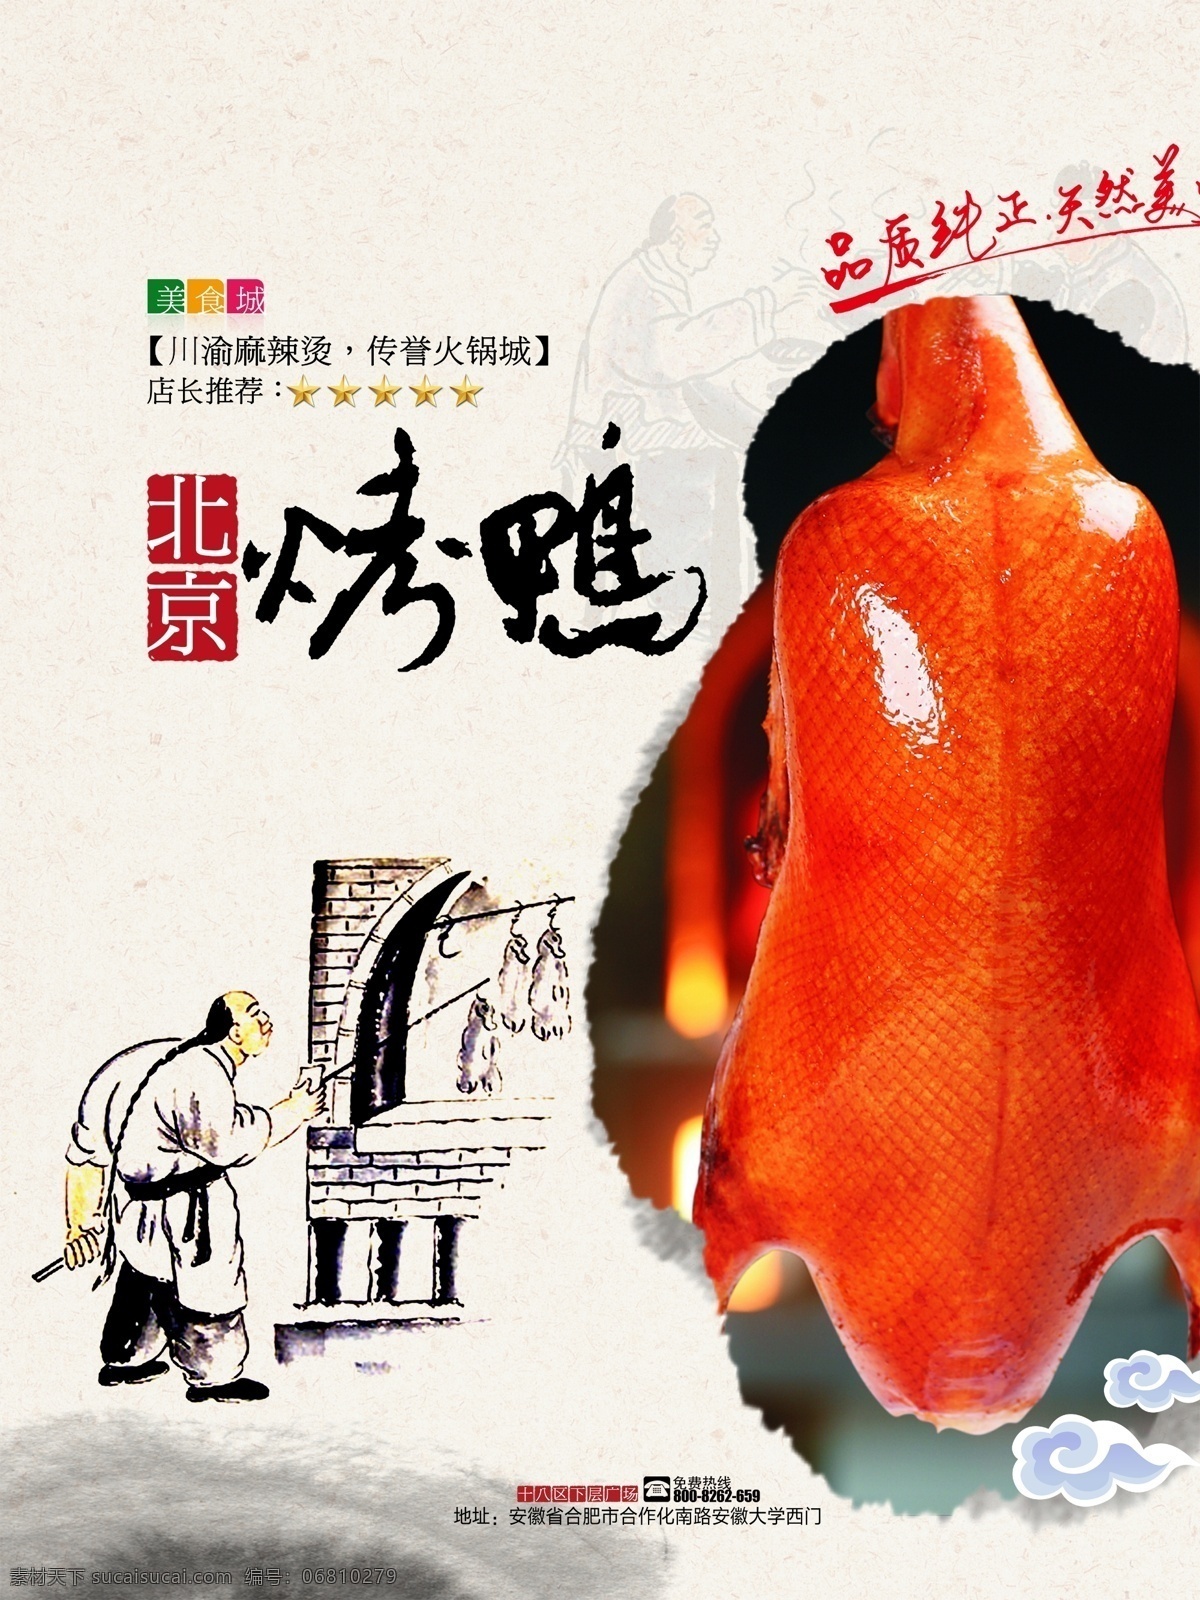 北京烤鸭图片 北京烤鸭 北京 烤鸭 北京烤鸭广告 传统美食 美味